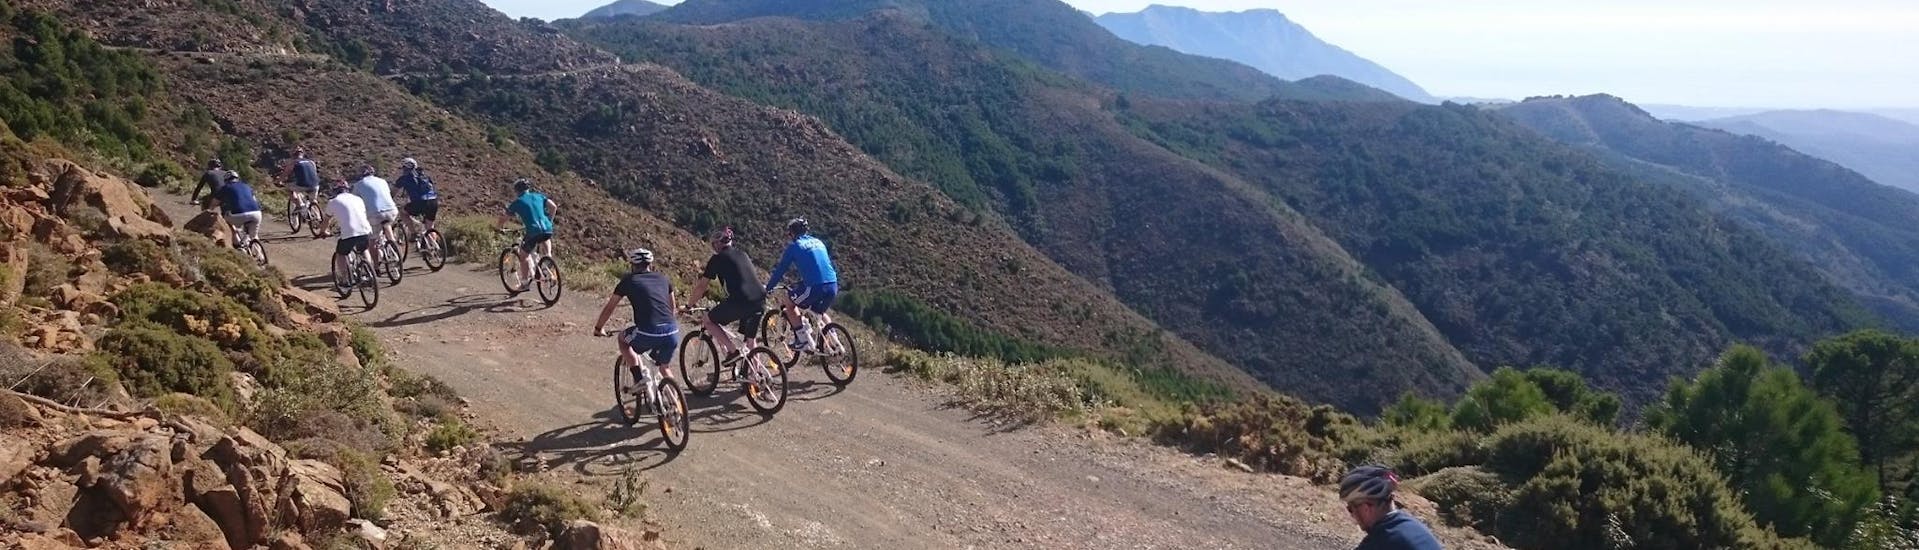 Sportliche Mountainbike-Tour in Puerto Banús - Sierra de las Nieves.